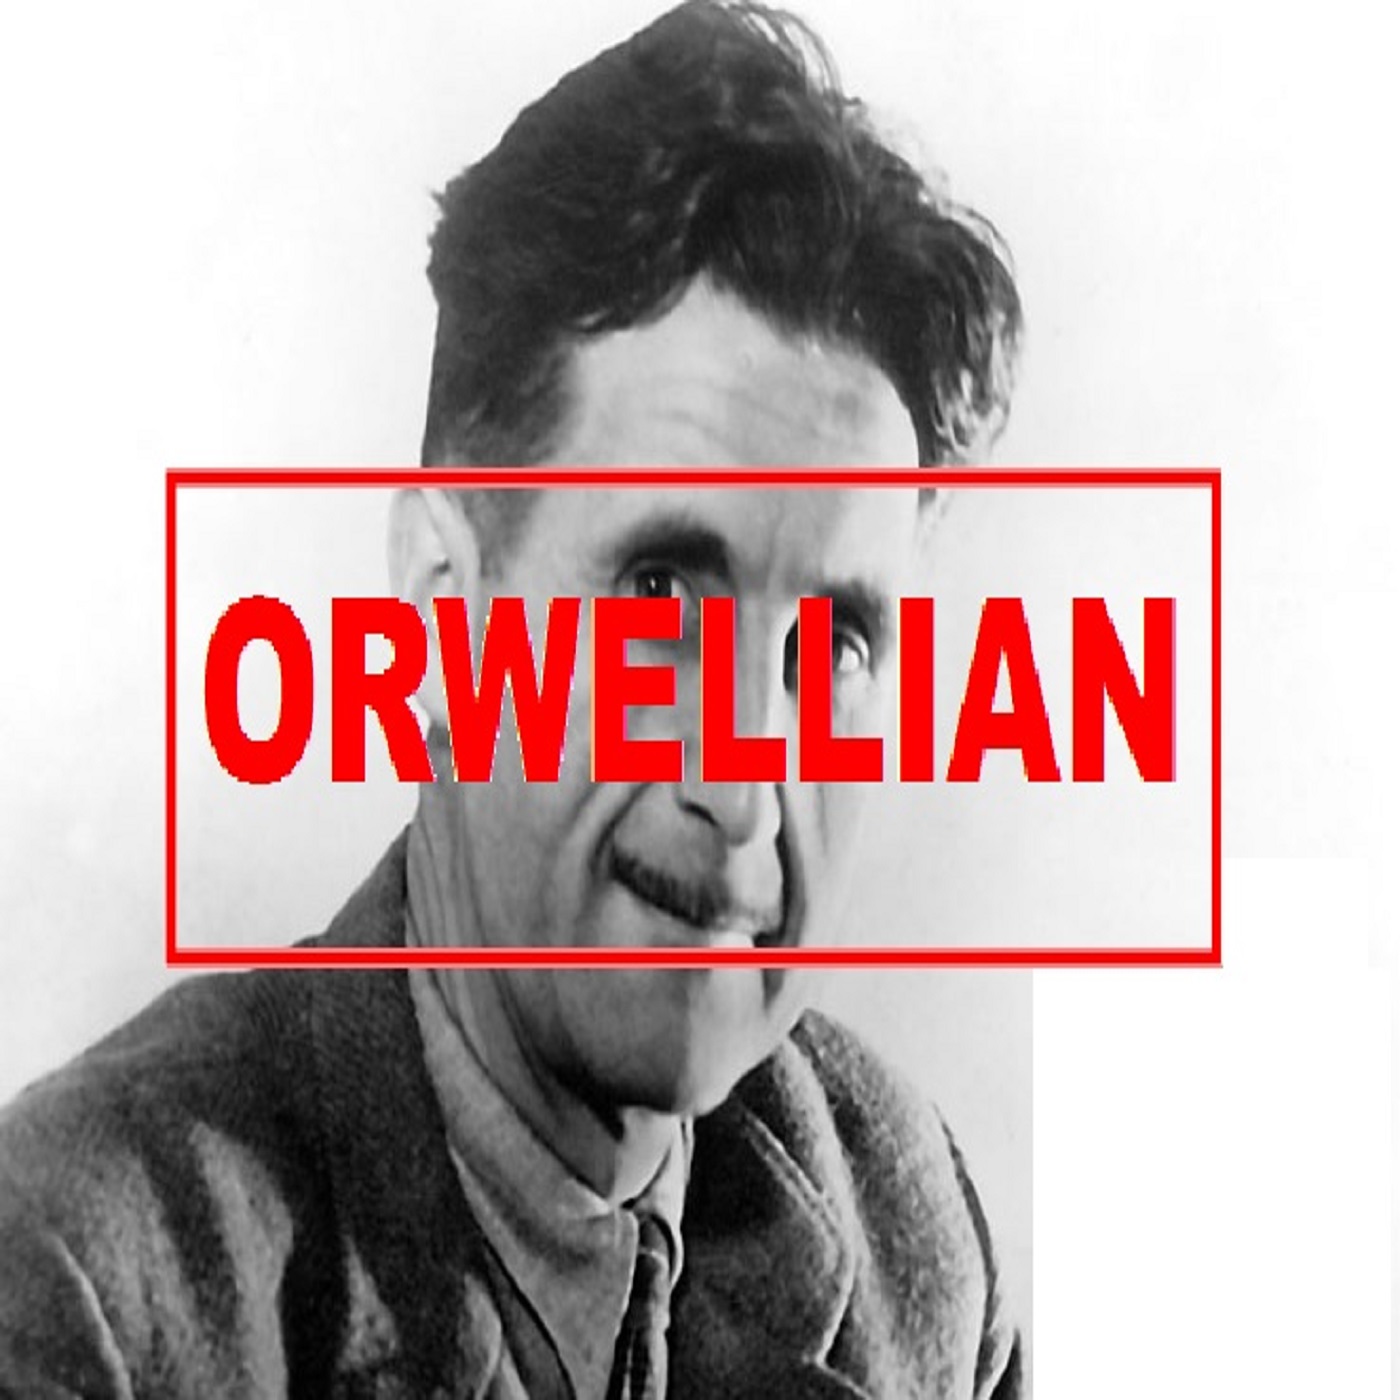 Orwellian